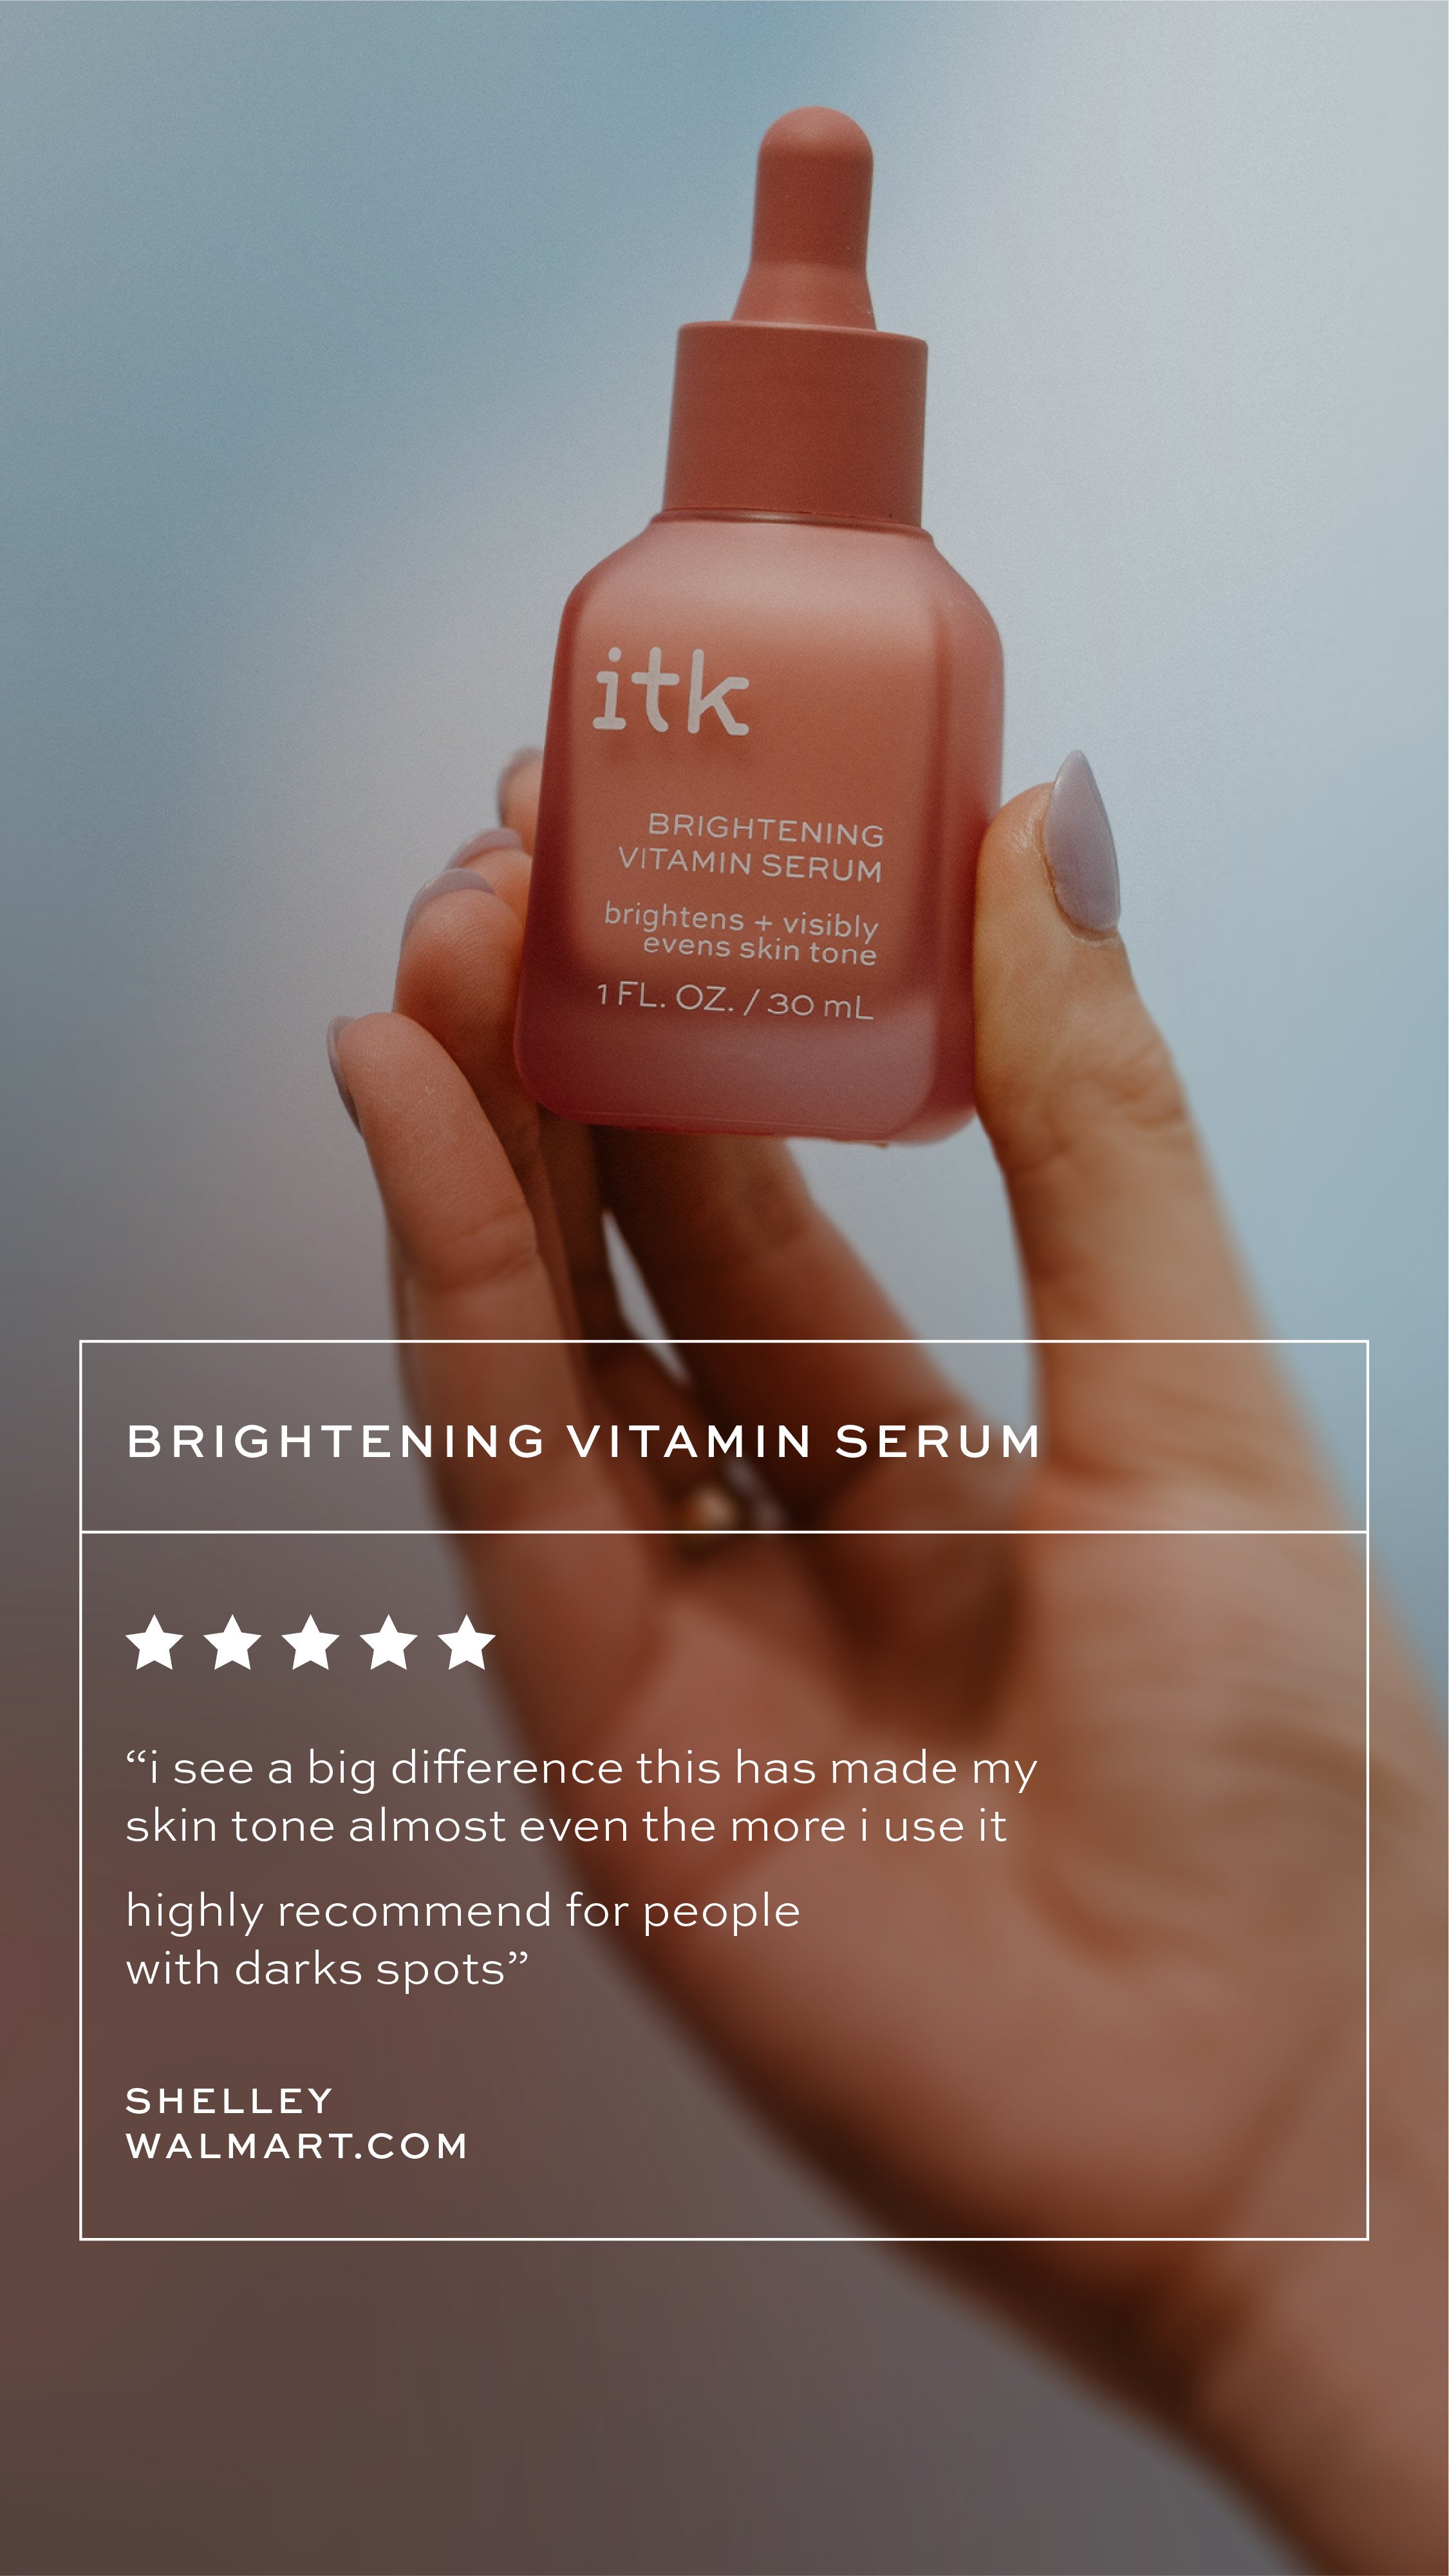 09_ITK_Social_Review-Template_Brightening-Vitamin-C-01.jpg